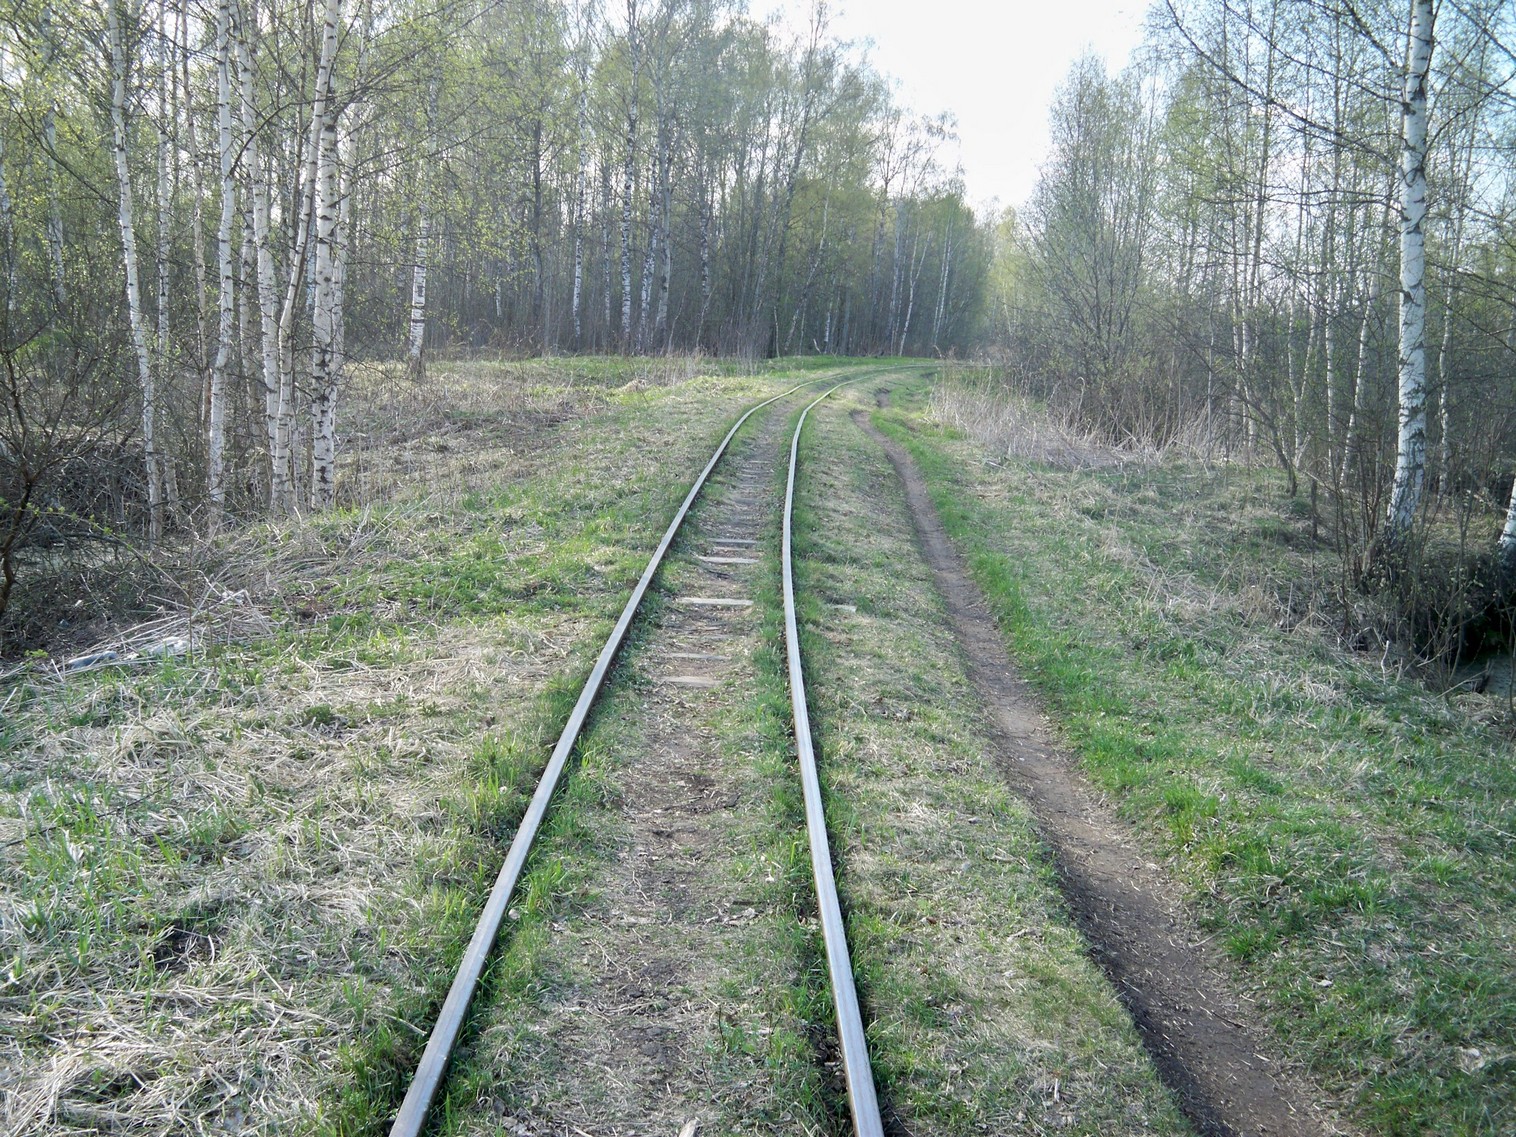 Узкоколейная железная дорога Васильевского предприятия промышленного железнодорожного транспорта  — фотографии, сделанные в 2014 году (часть 6)